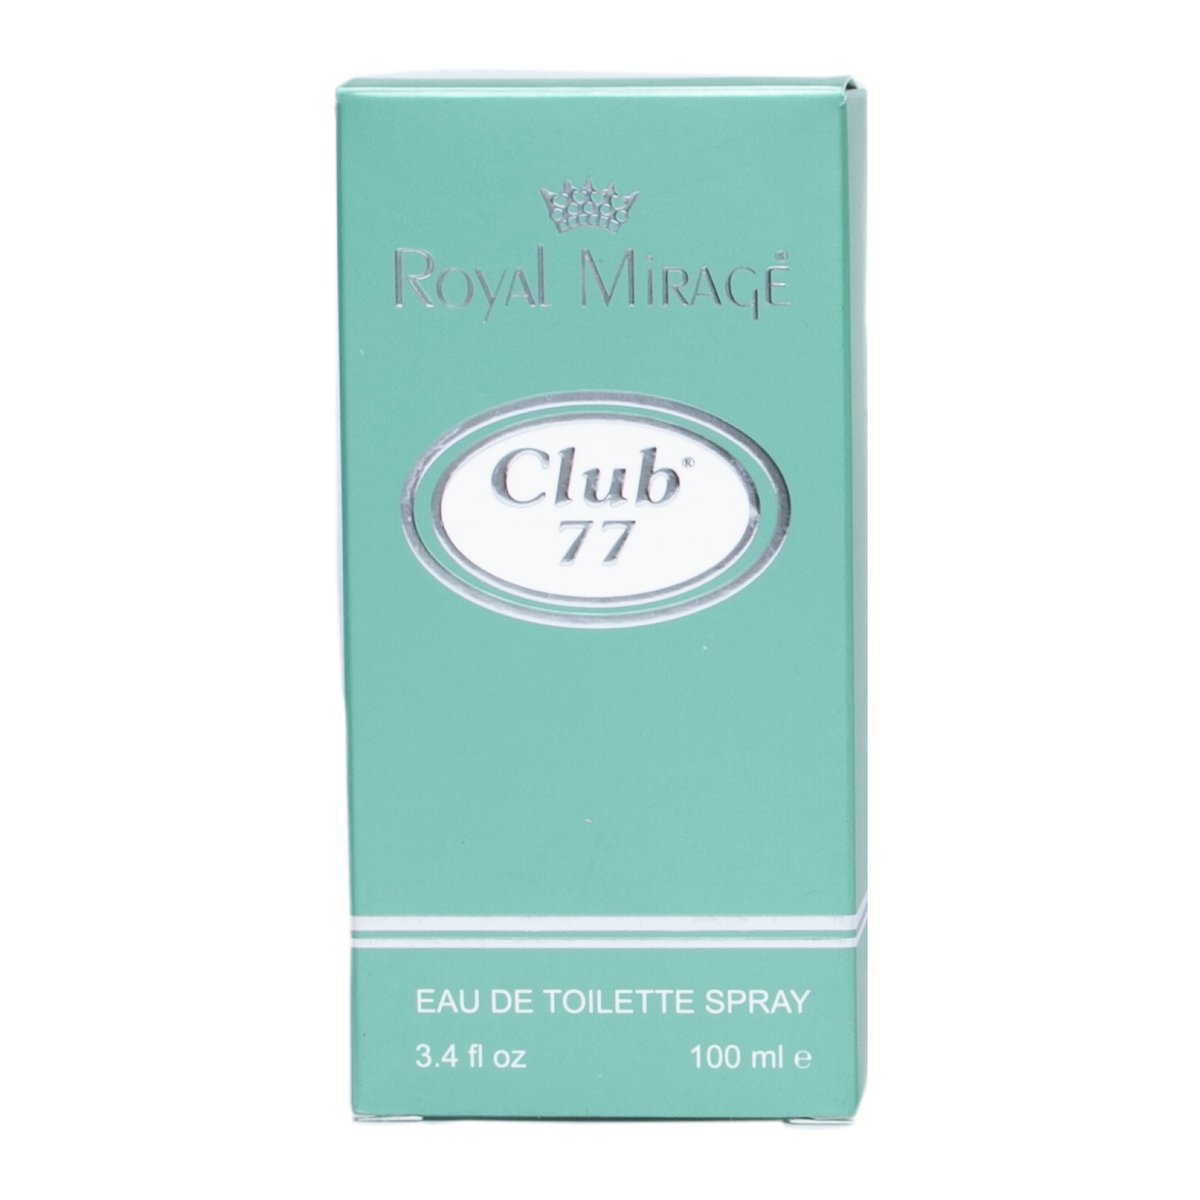 Royal Mirage Club77 Eau De Toilette Spray 100 ml